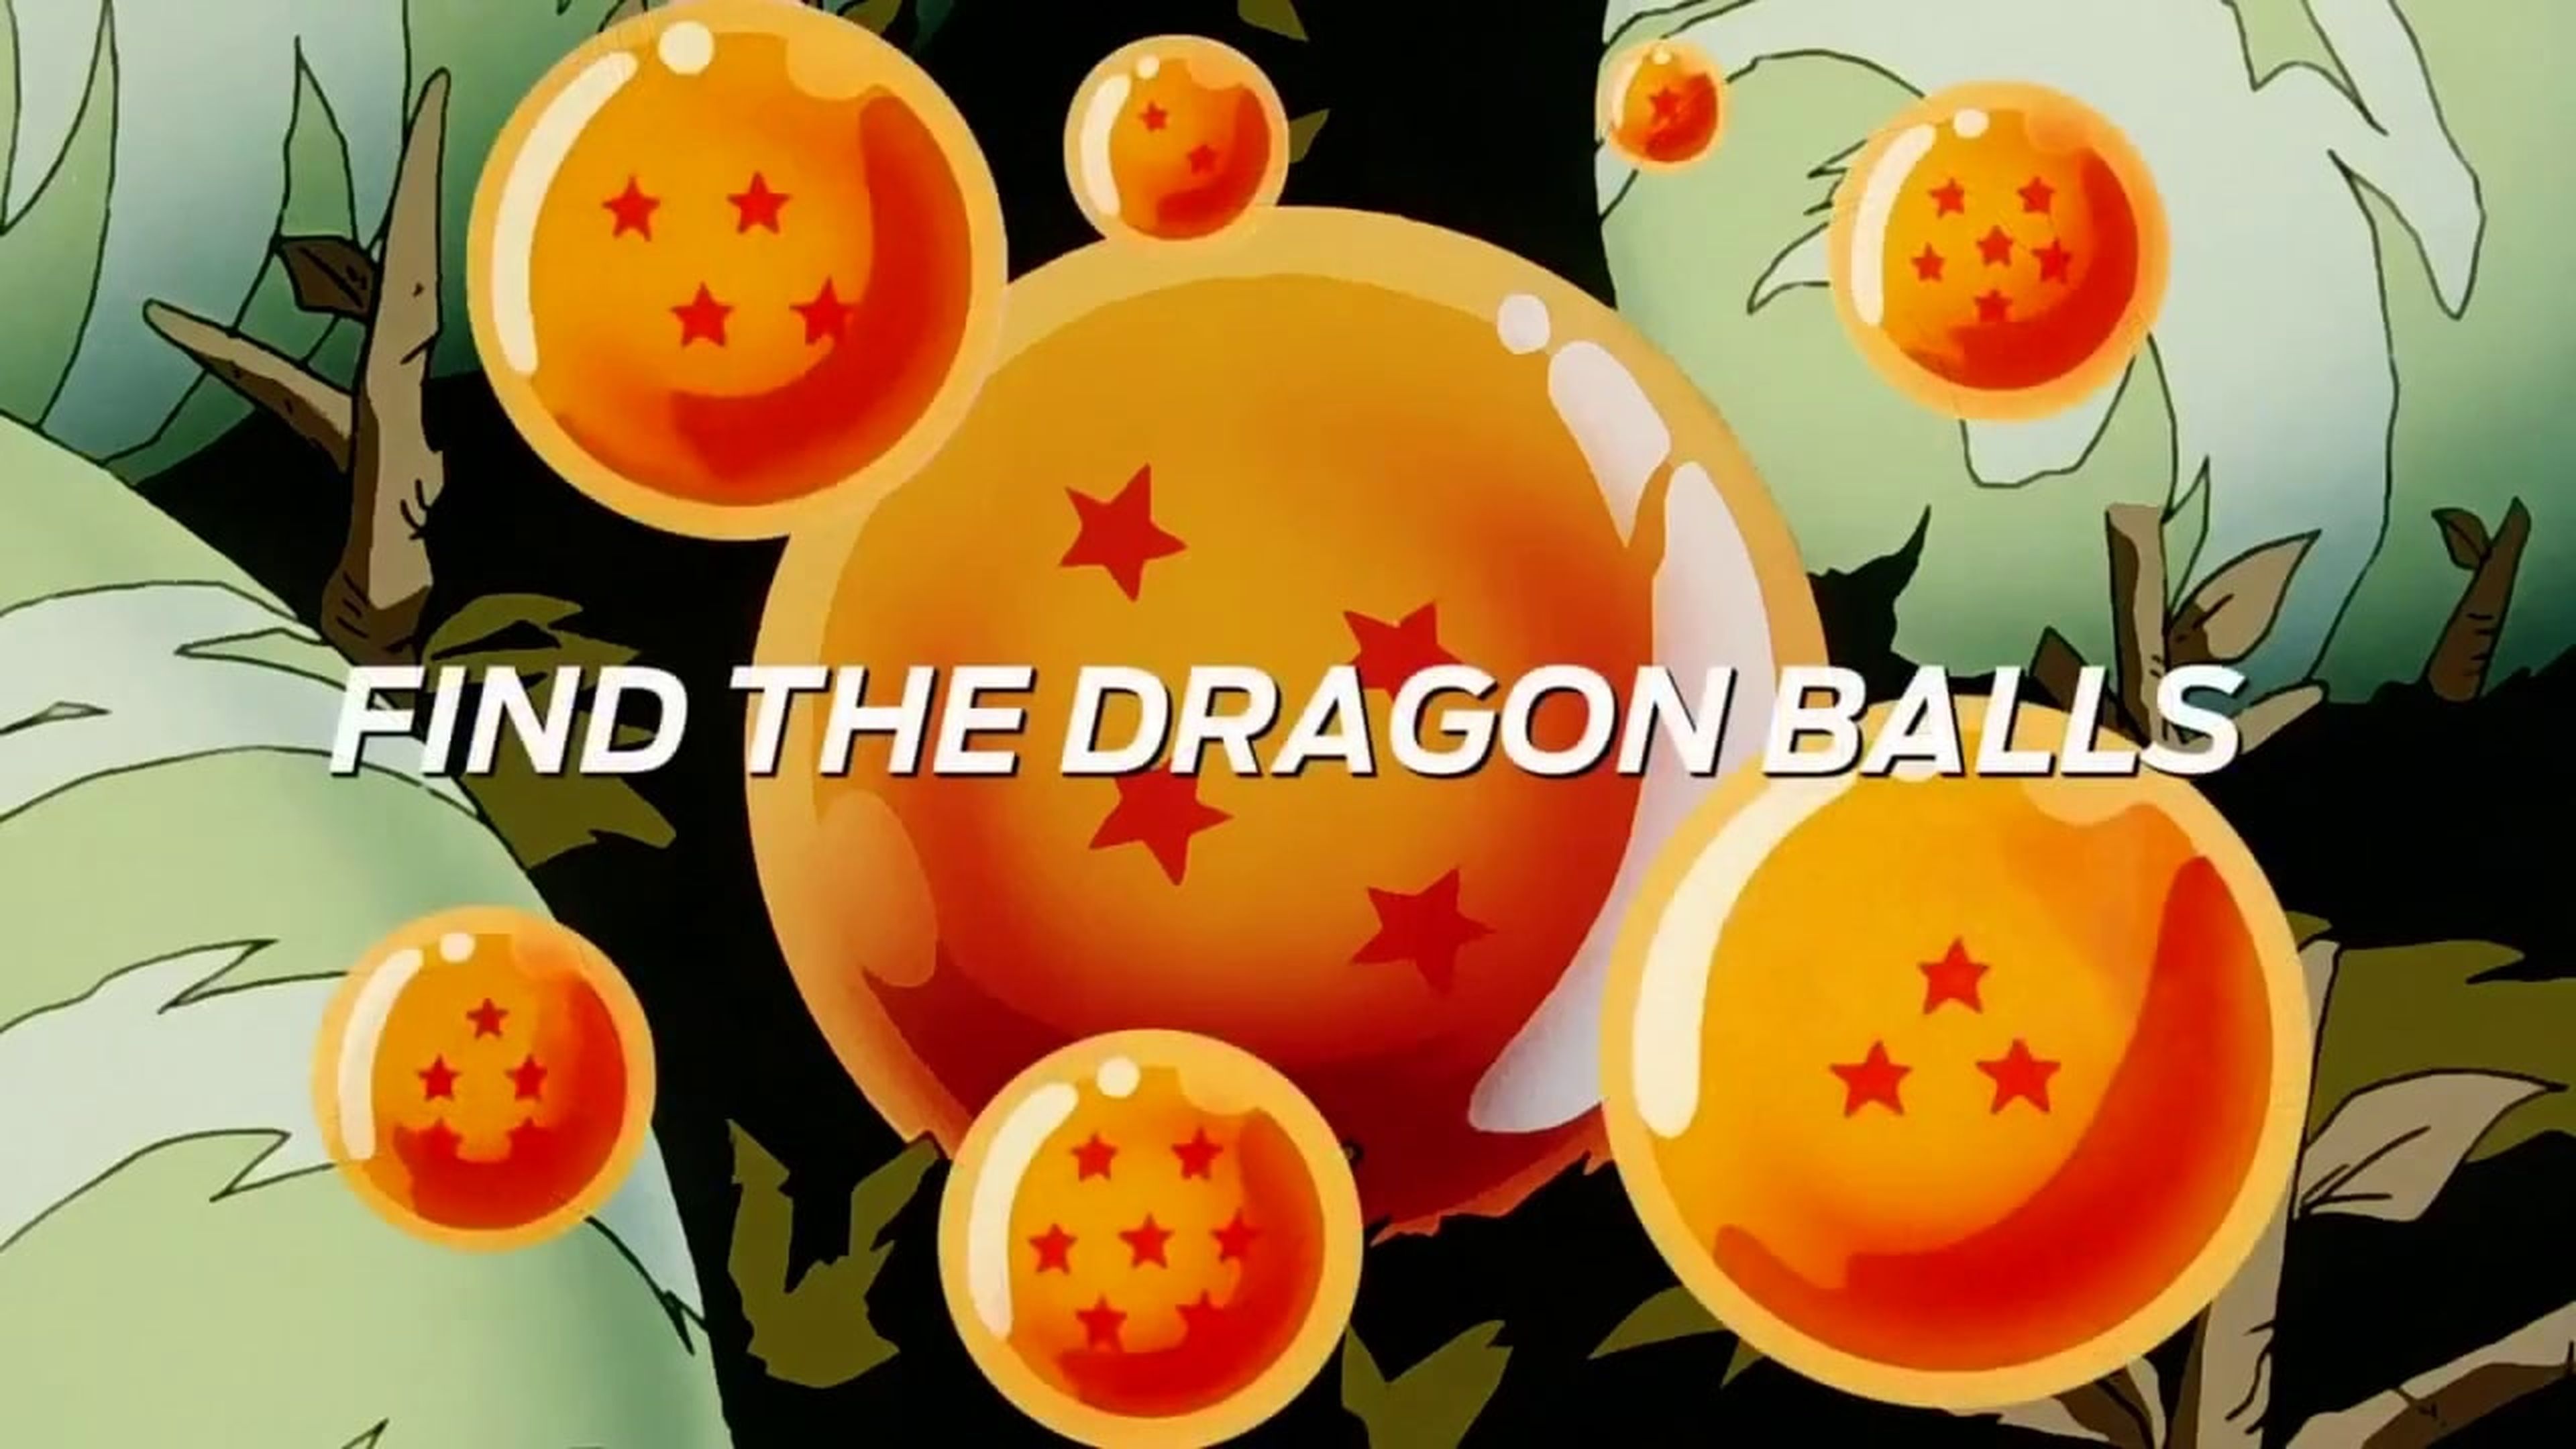 Crítica del capítulo 239 de Dragon Ball Z en el que Mutenroshi consigue una Bola de Dragón de manera asquerosa 